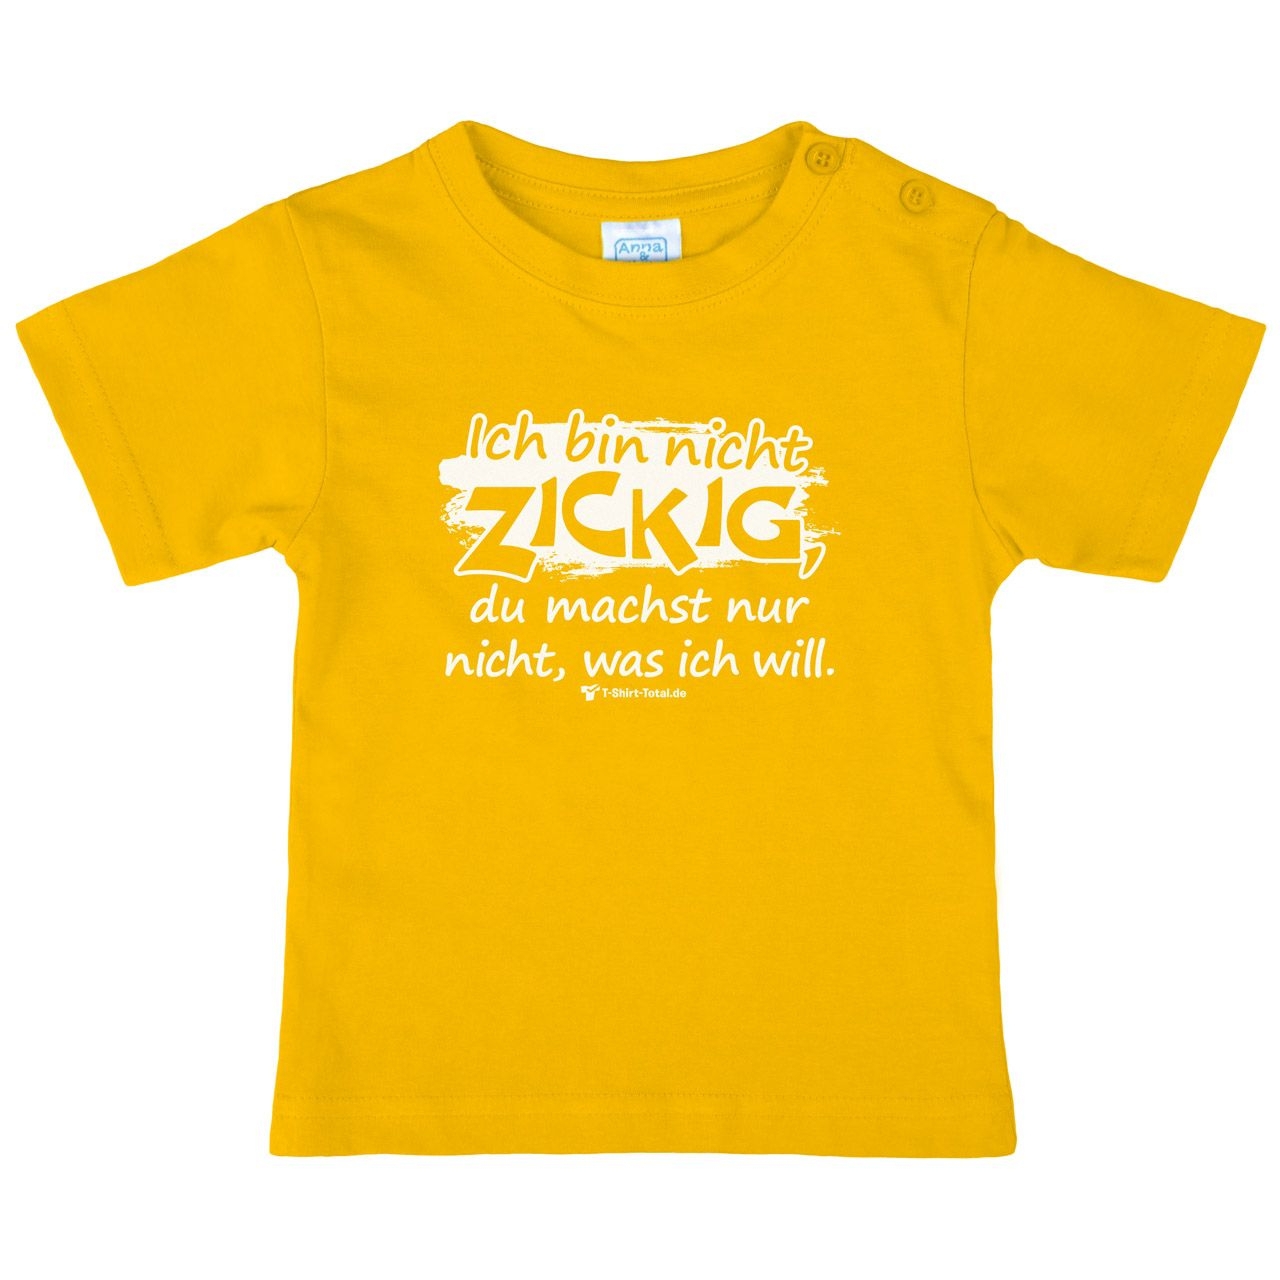 Bin nicht zickig Kinder T-Shirt gelb 92